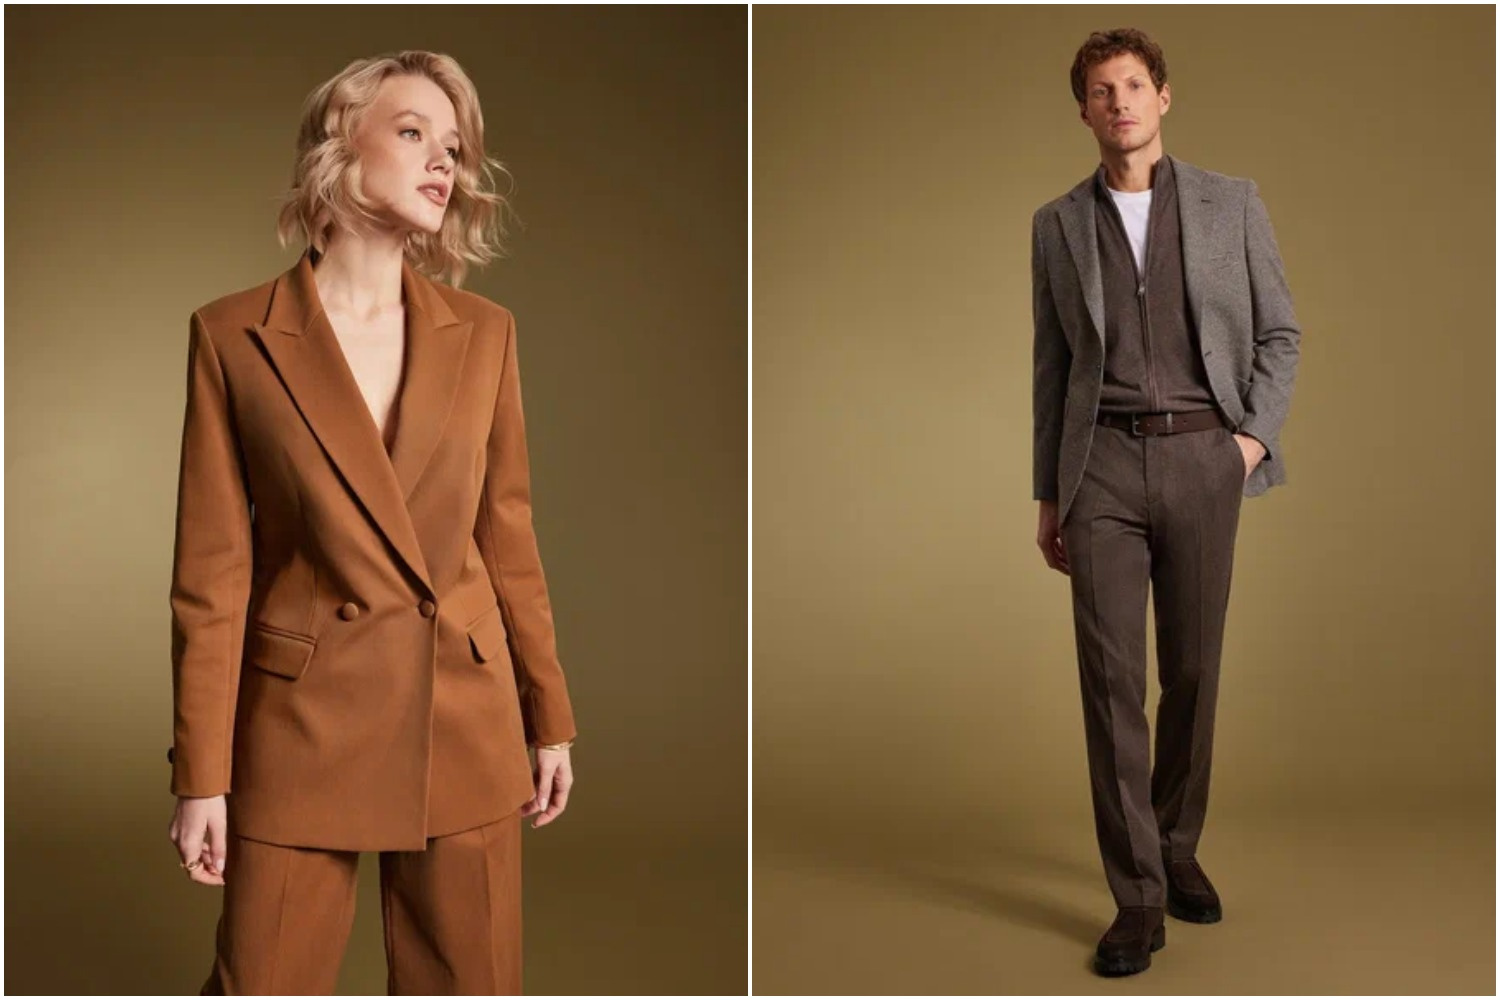 Одежда от бренда SINAR — современная классика, воплощенная в тканях европейского качества и трендовых фасонах